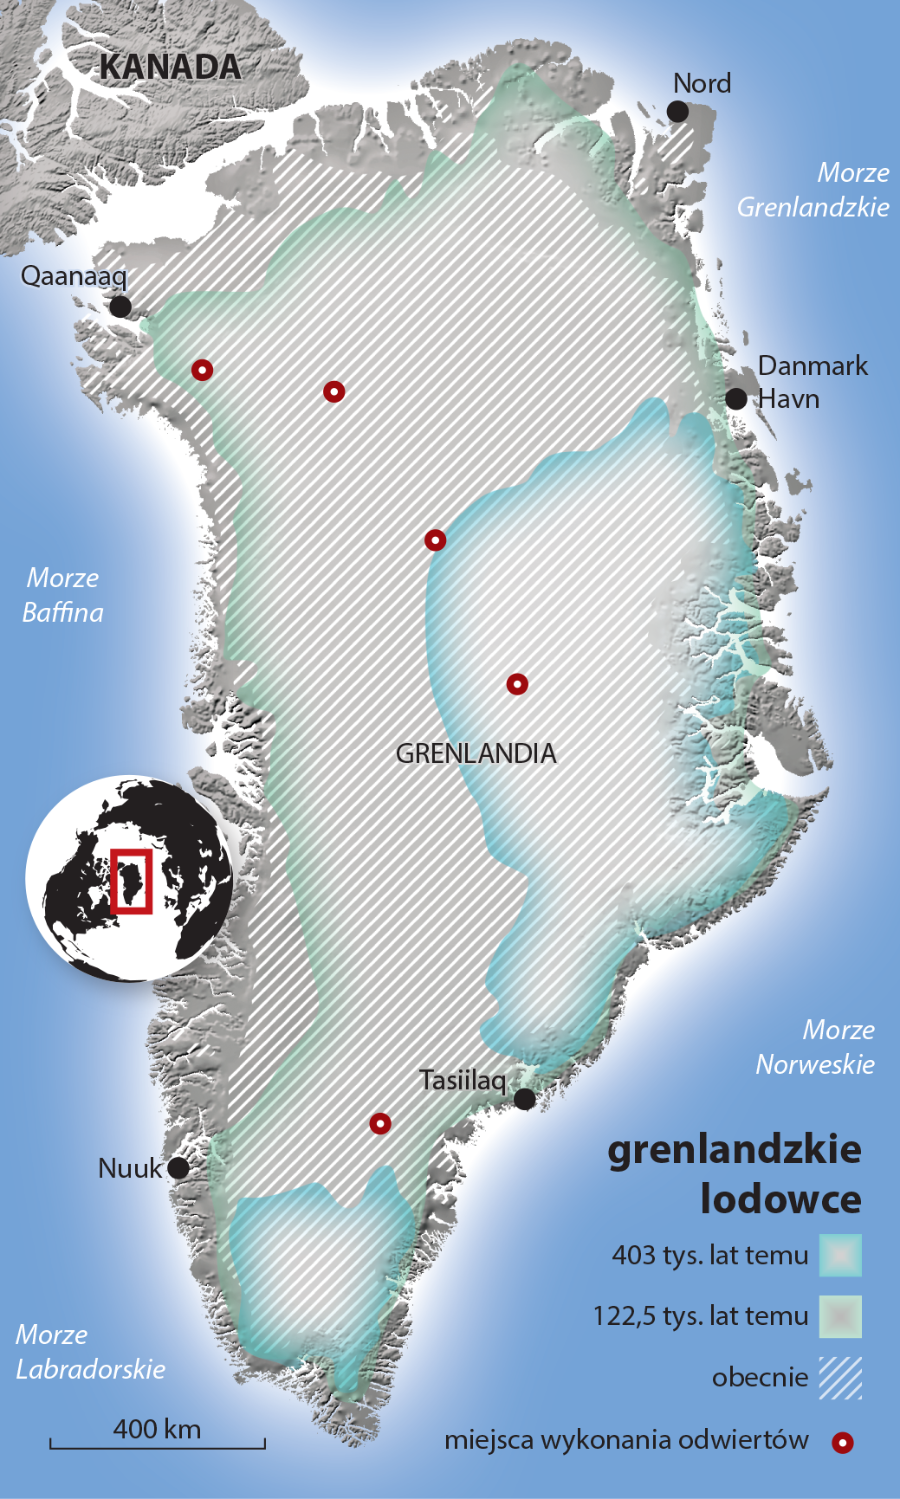 Obszary zajmowane przez grenlandzkie lodowce na przestrzeni lat.